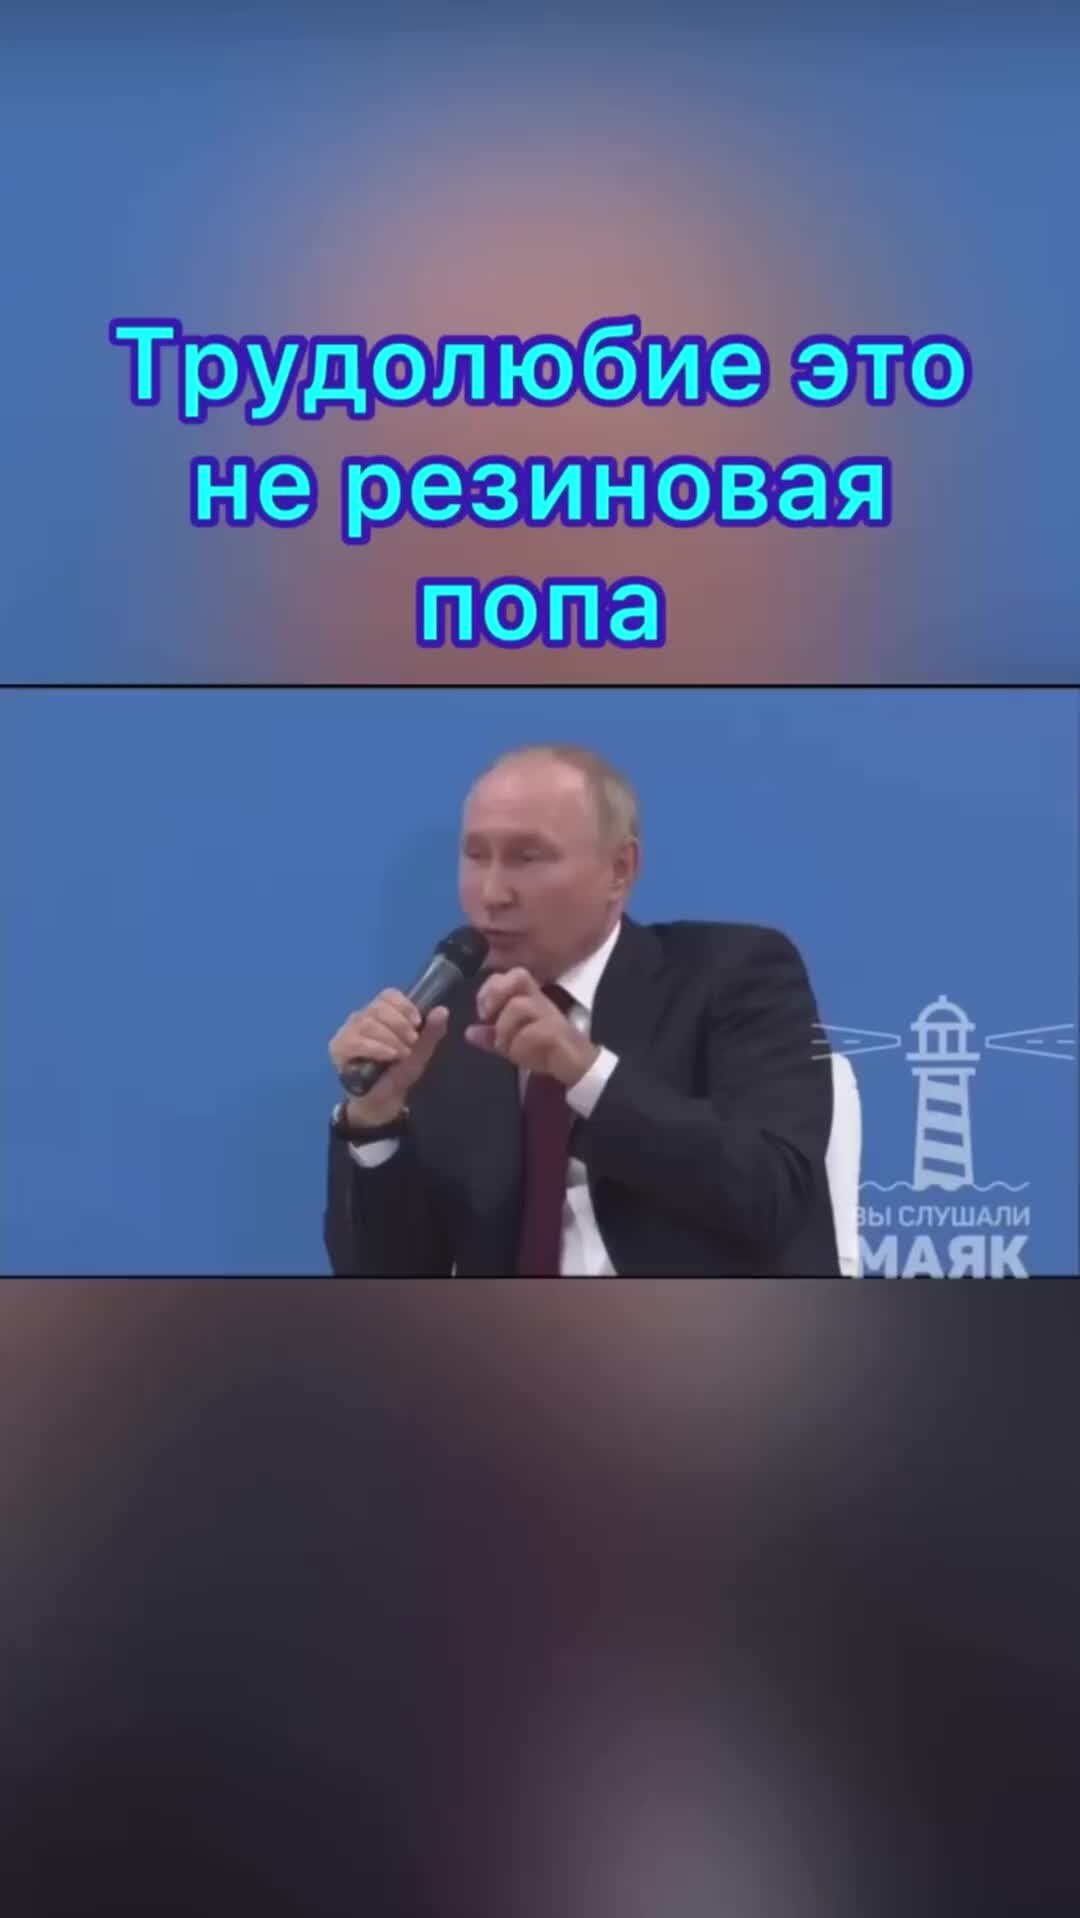 Путин снова заговорил о попе. На этот раз не о резиновой